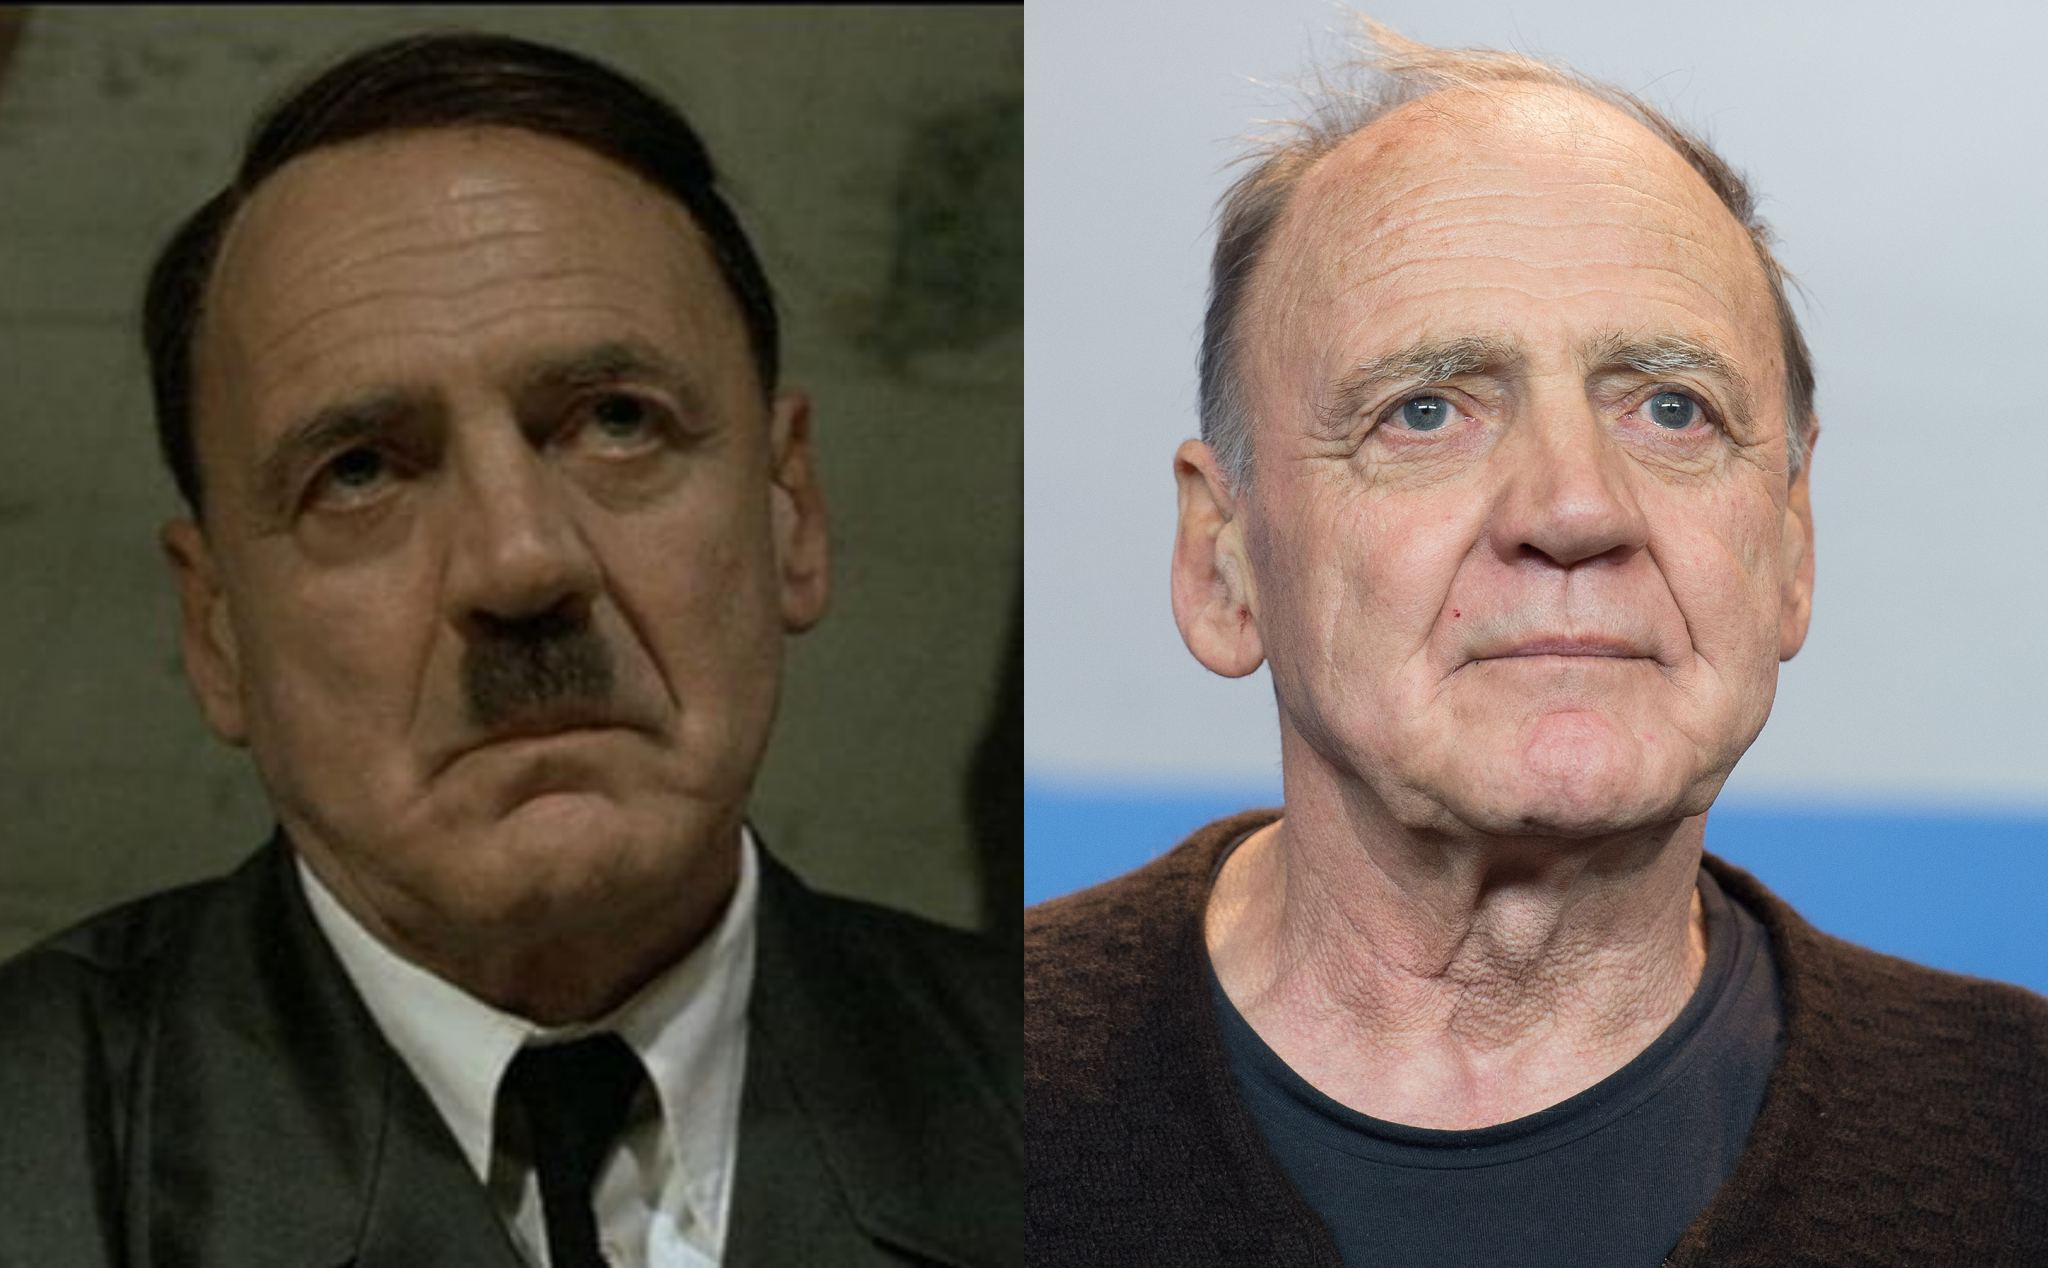 Bruno Ganz, người đóng vai "Hitler nổi nóng" qua đời ở tuổi 77